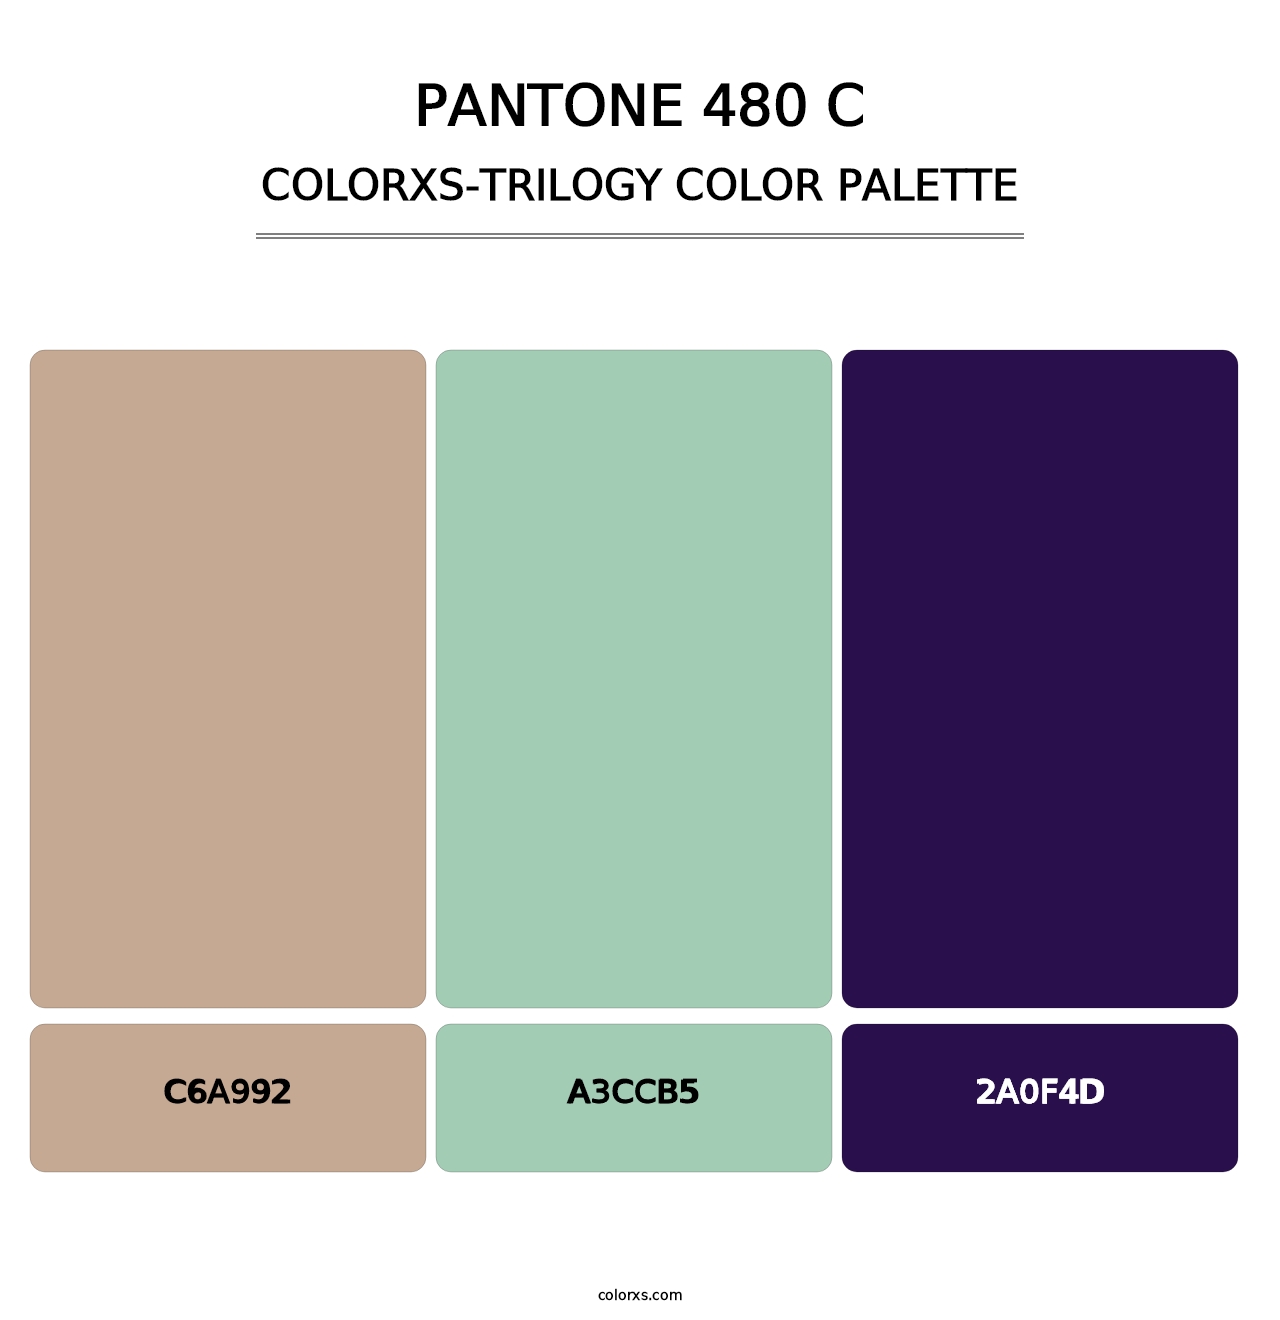 PANTONE 480 C - Colorxs Trilogy Palette